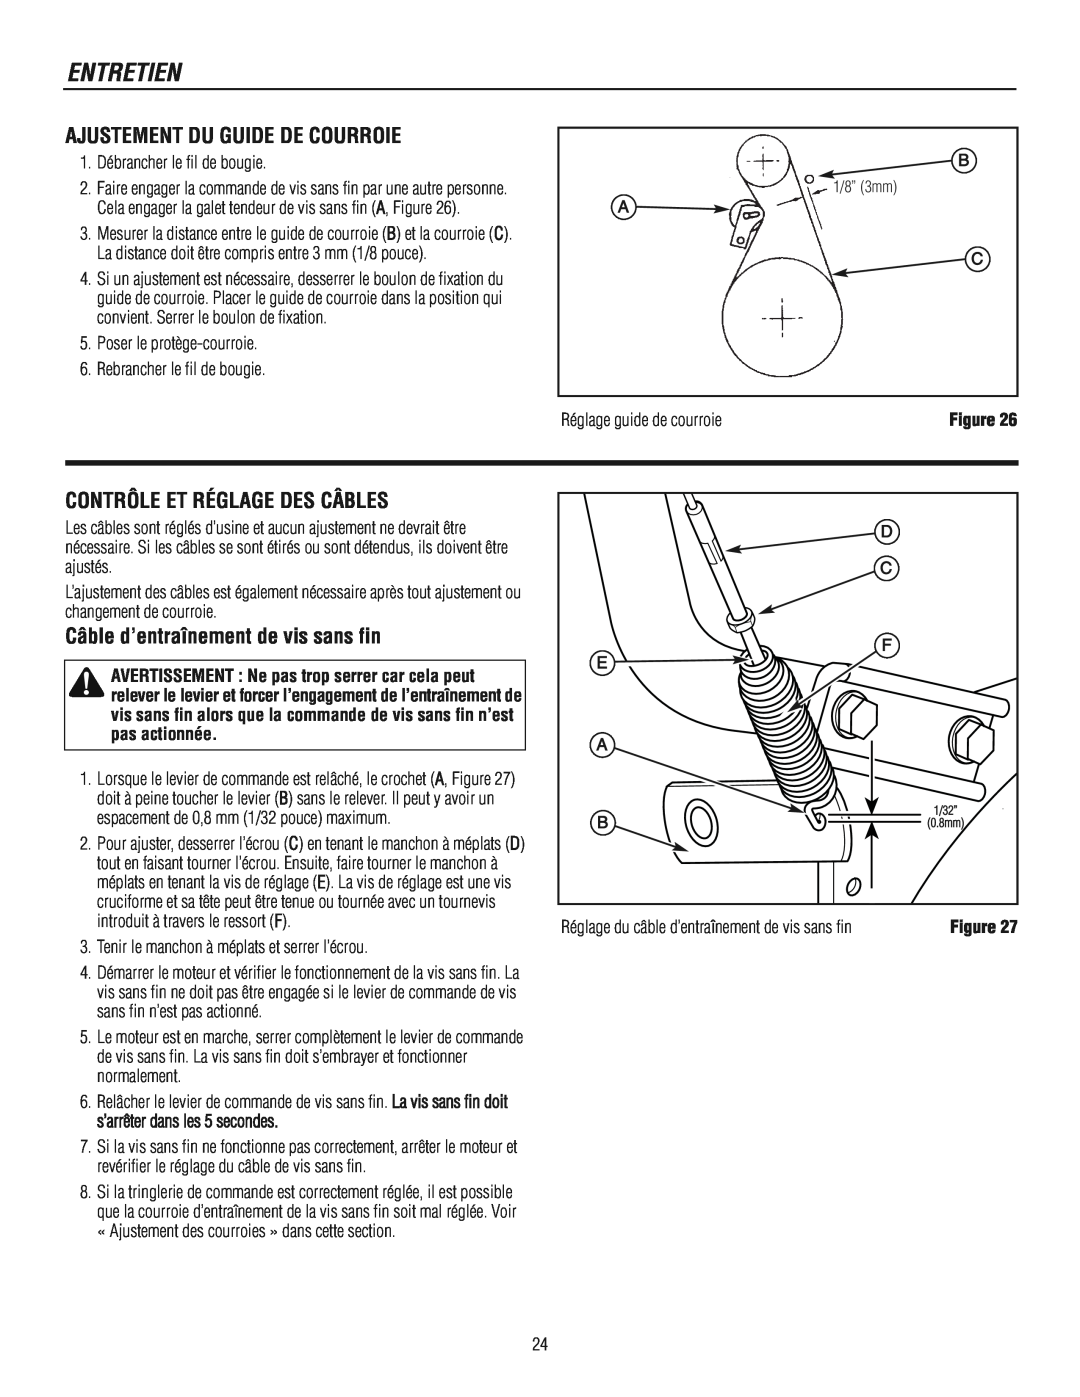 Murray 1695722 manual Ajustement Du Guide De Courroie, Contrôle Et Réglage Des Câbles, Câble d’entraînement de vis sans fin 